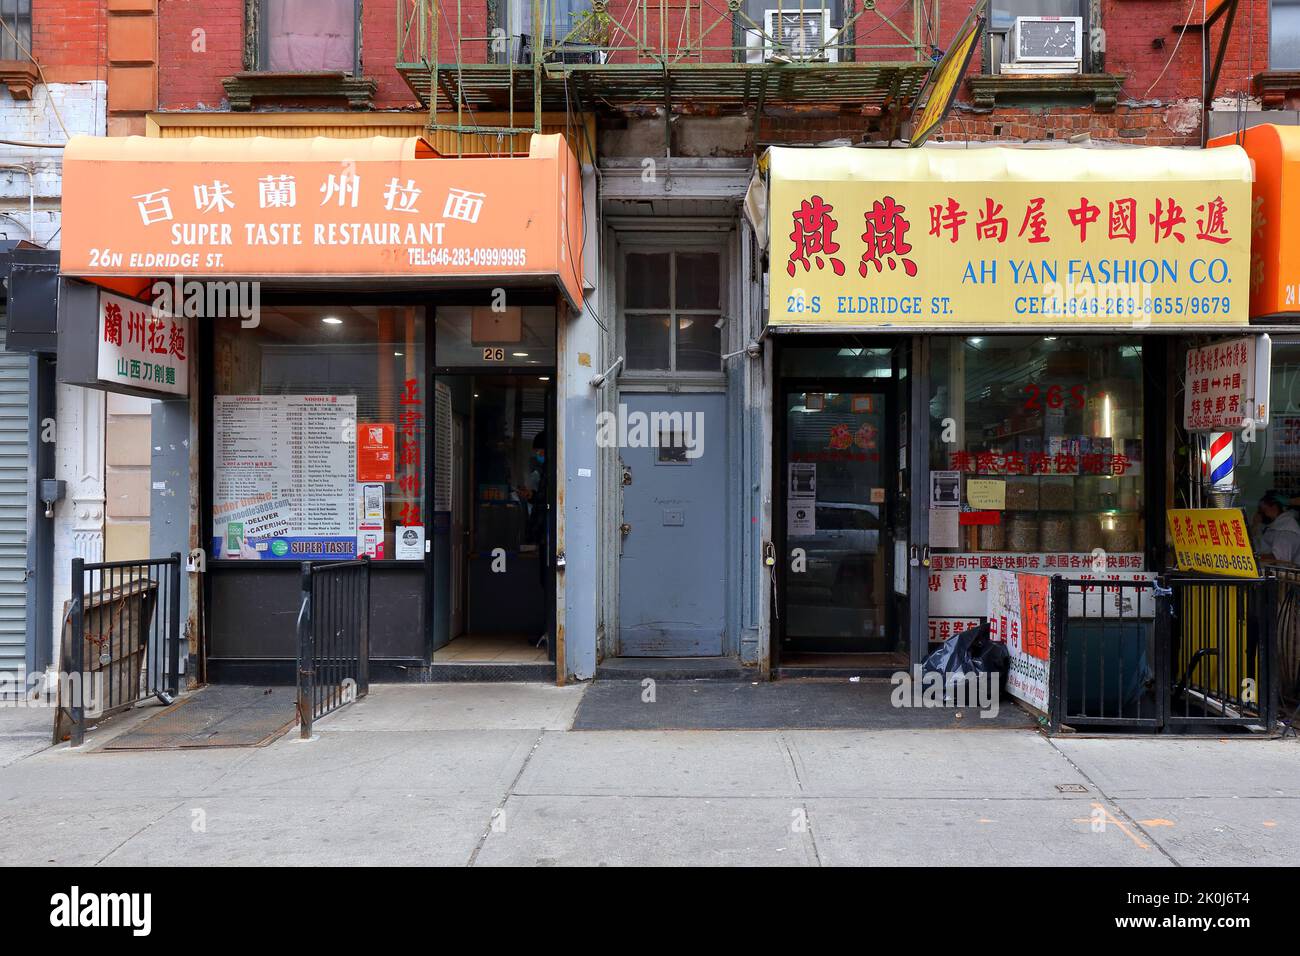 Restaurant Super Taste 百味蘭州拉面, 26 Eldridge St, New York, New York, New York photo d'un restaurant de nouilles Lanzhou tiré à la main dans le quartier chinois de Manhattan. Banque D'Images